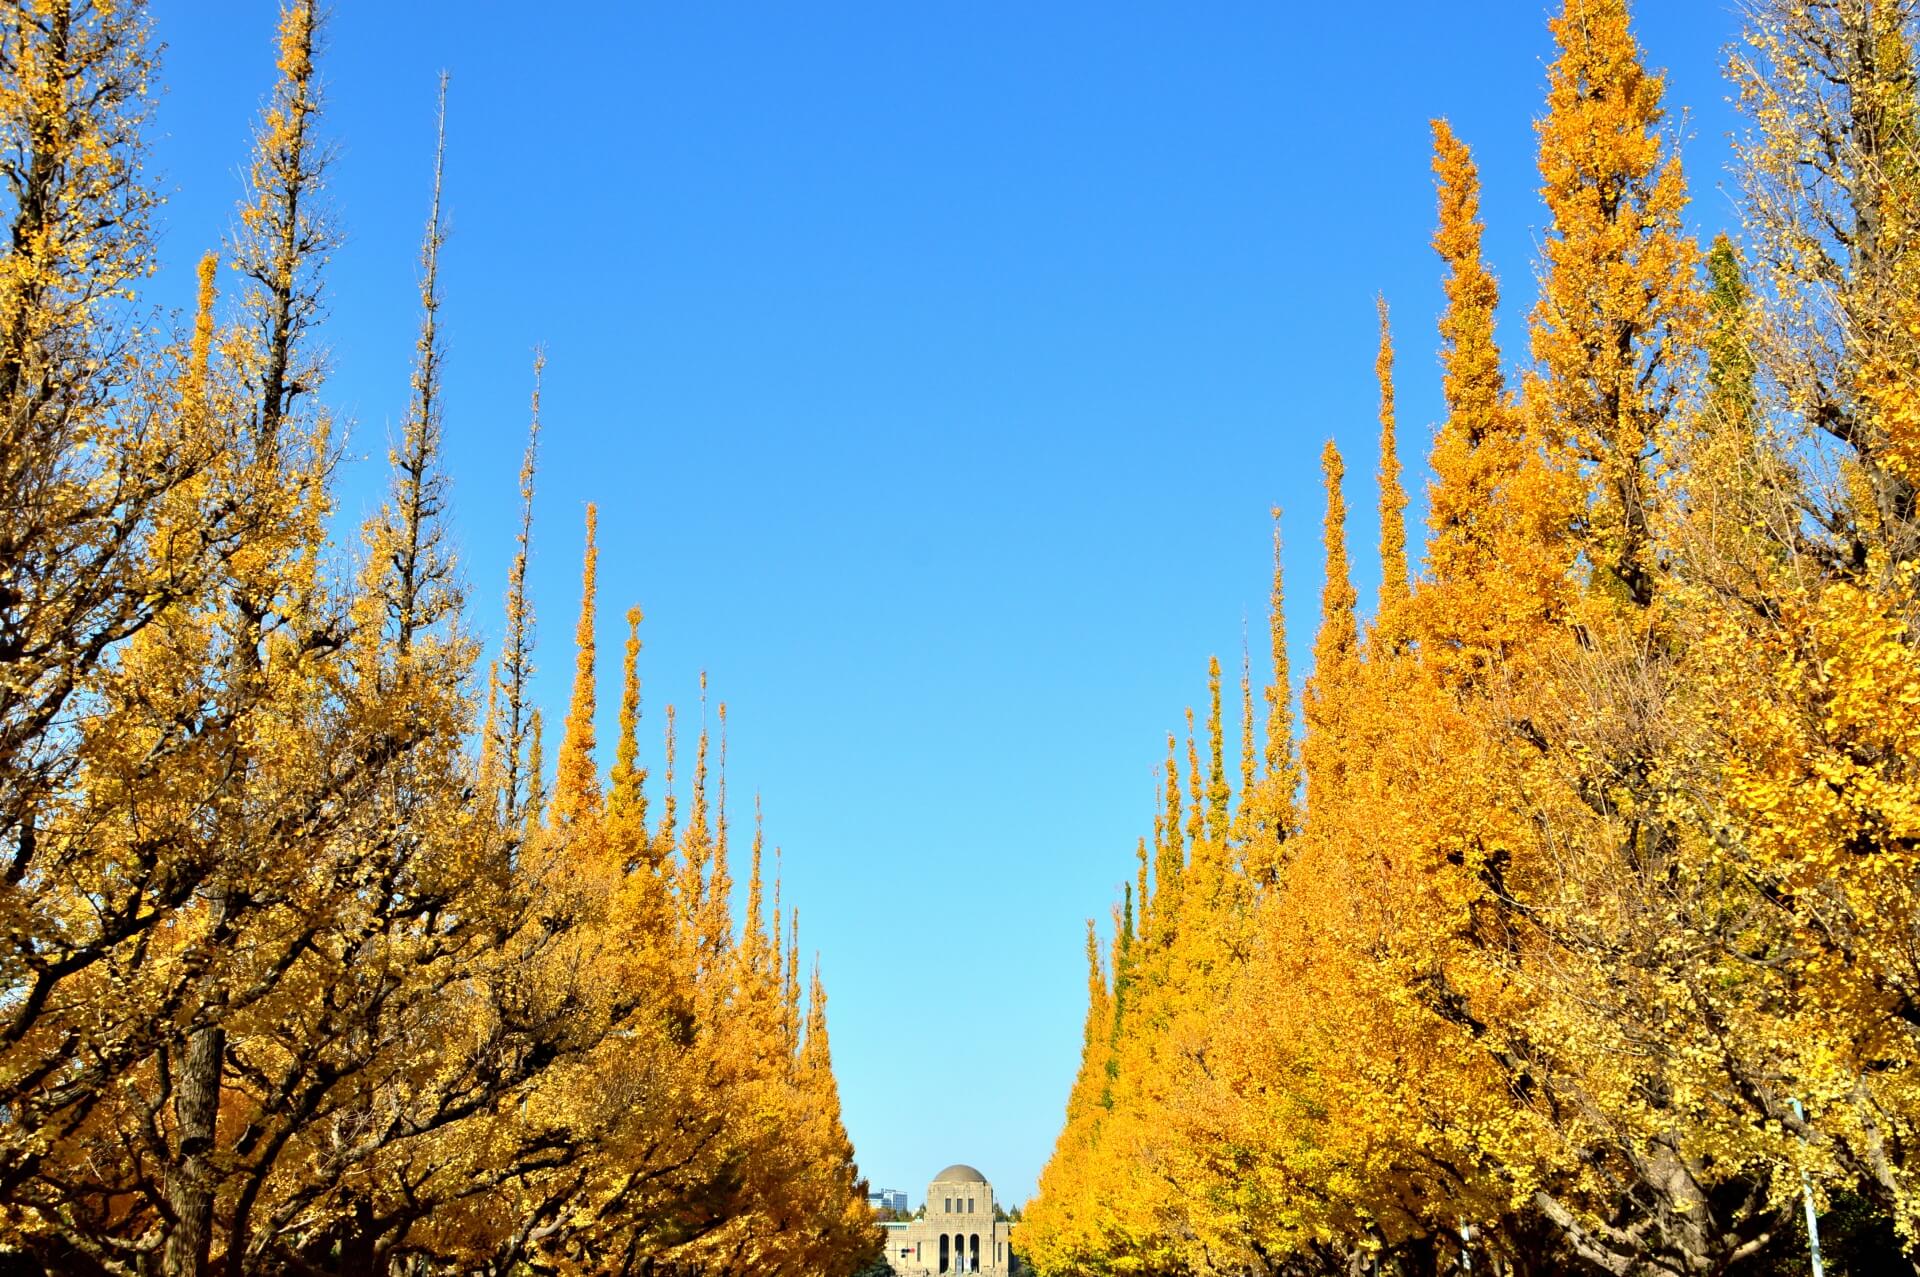 神宮外苑、歴史ある樹木1000本伐採の都市計画は「フェアプレイじゃない」―中央大学研究開発機構・石川幹子機構教授―